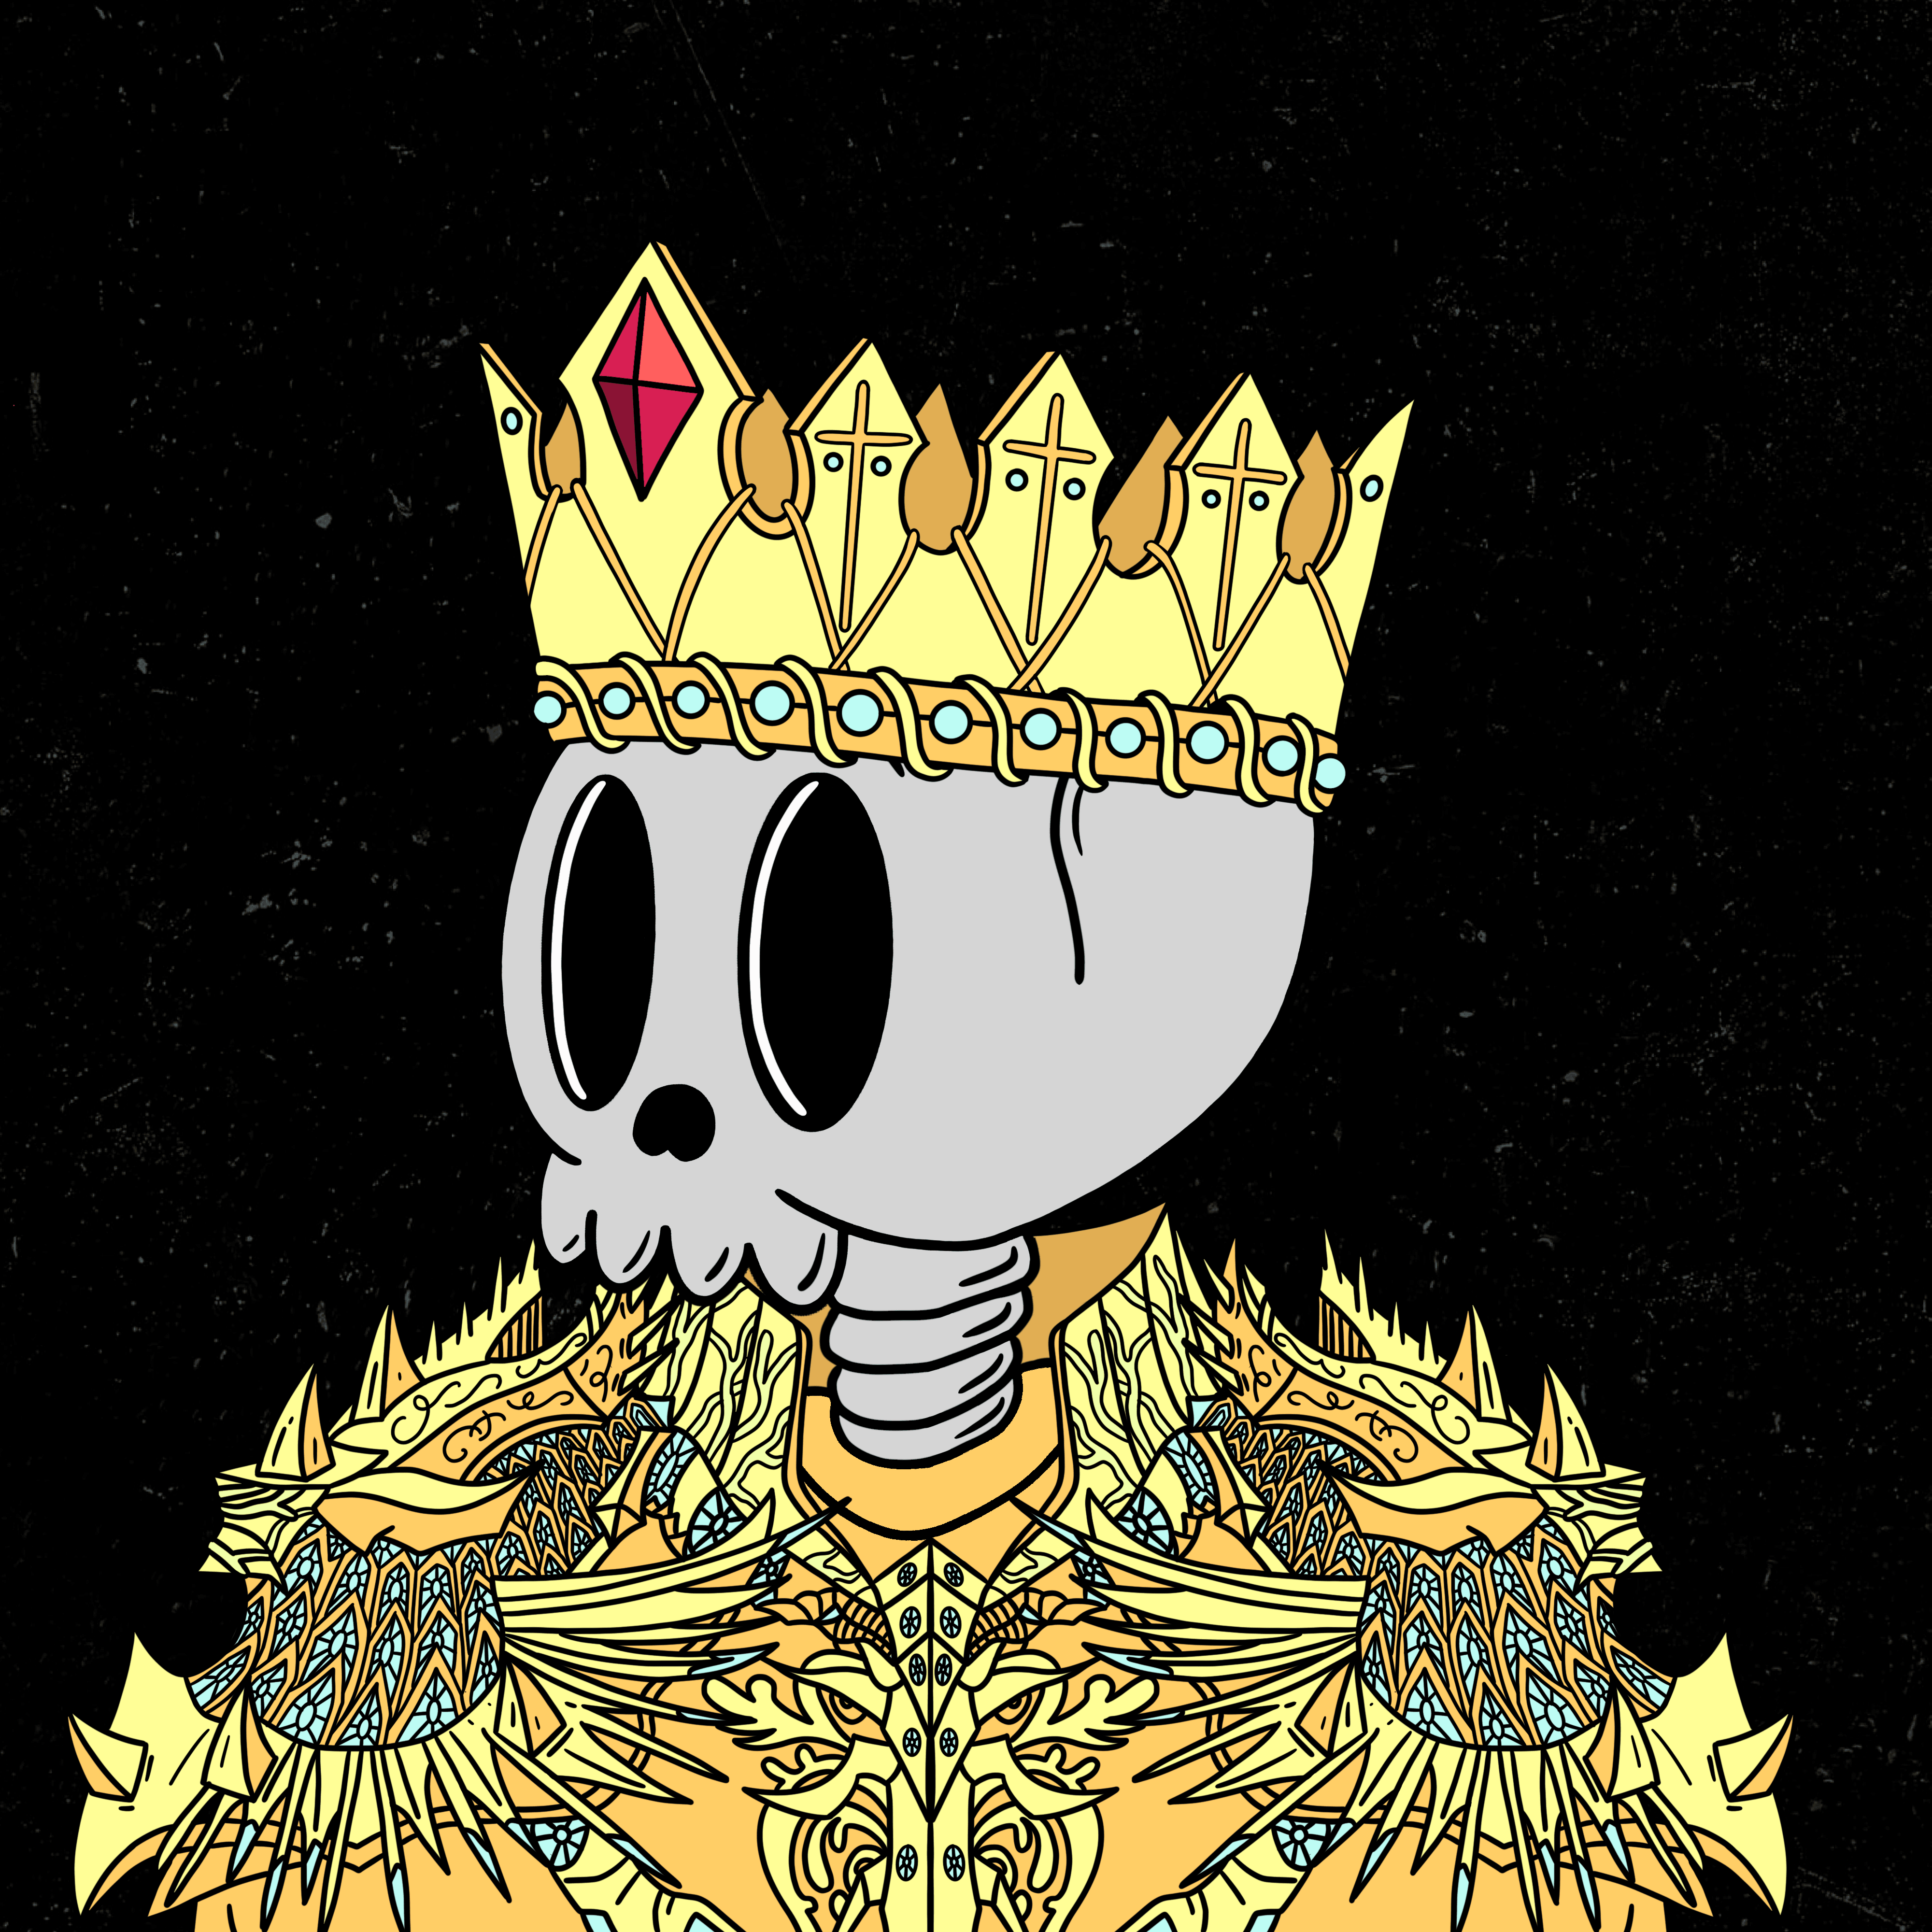 Skeleton 416: GOLDEN GOD 